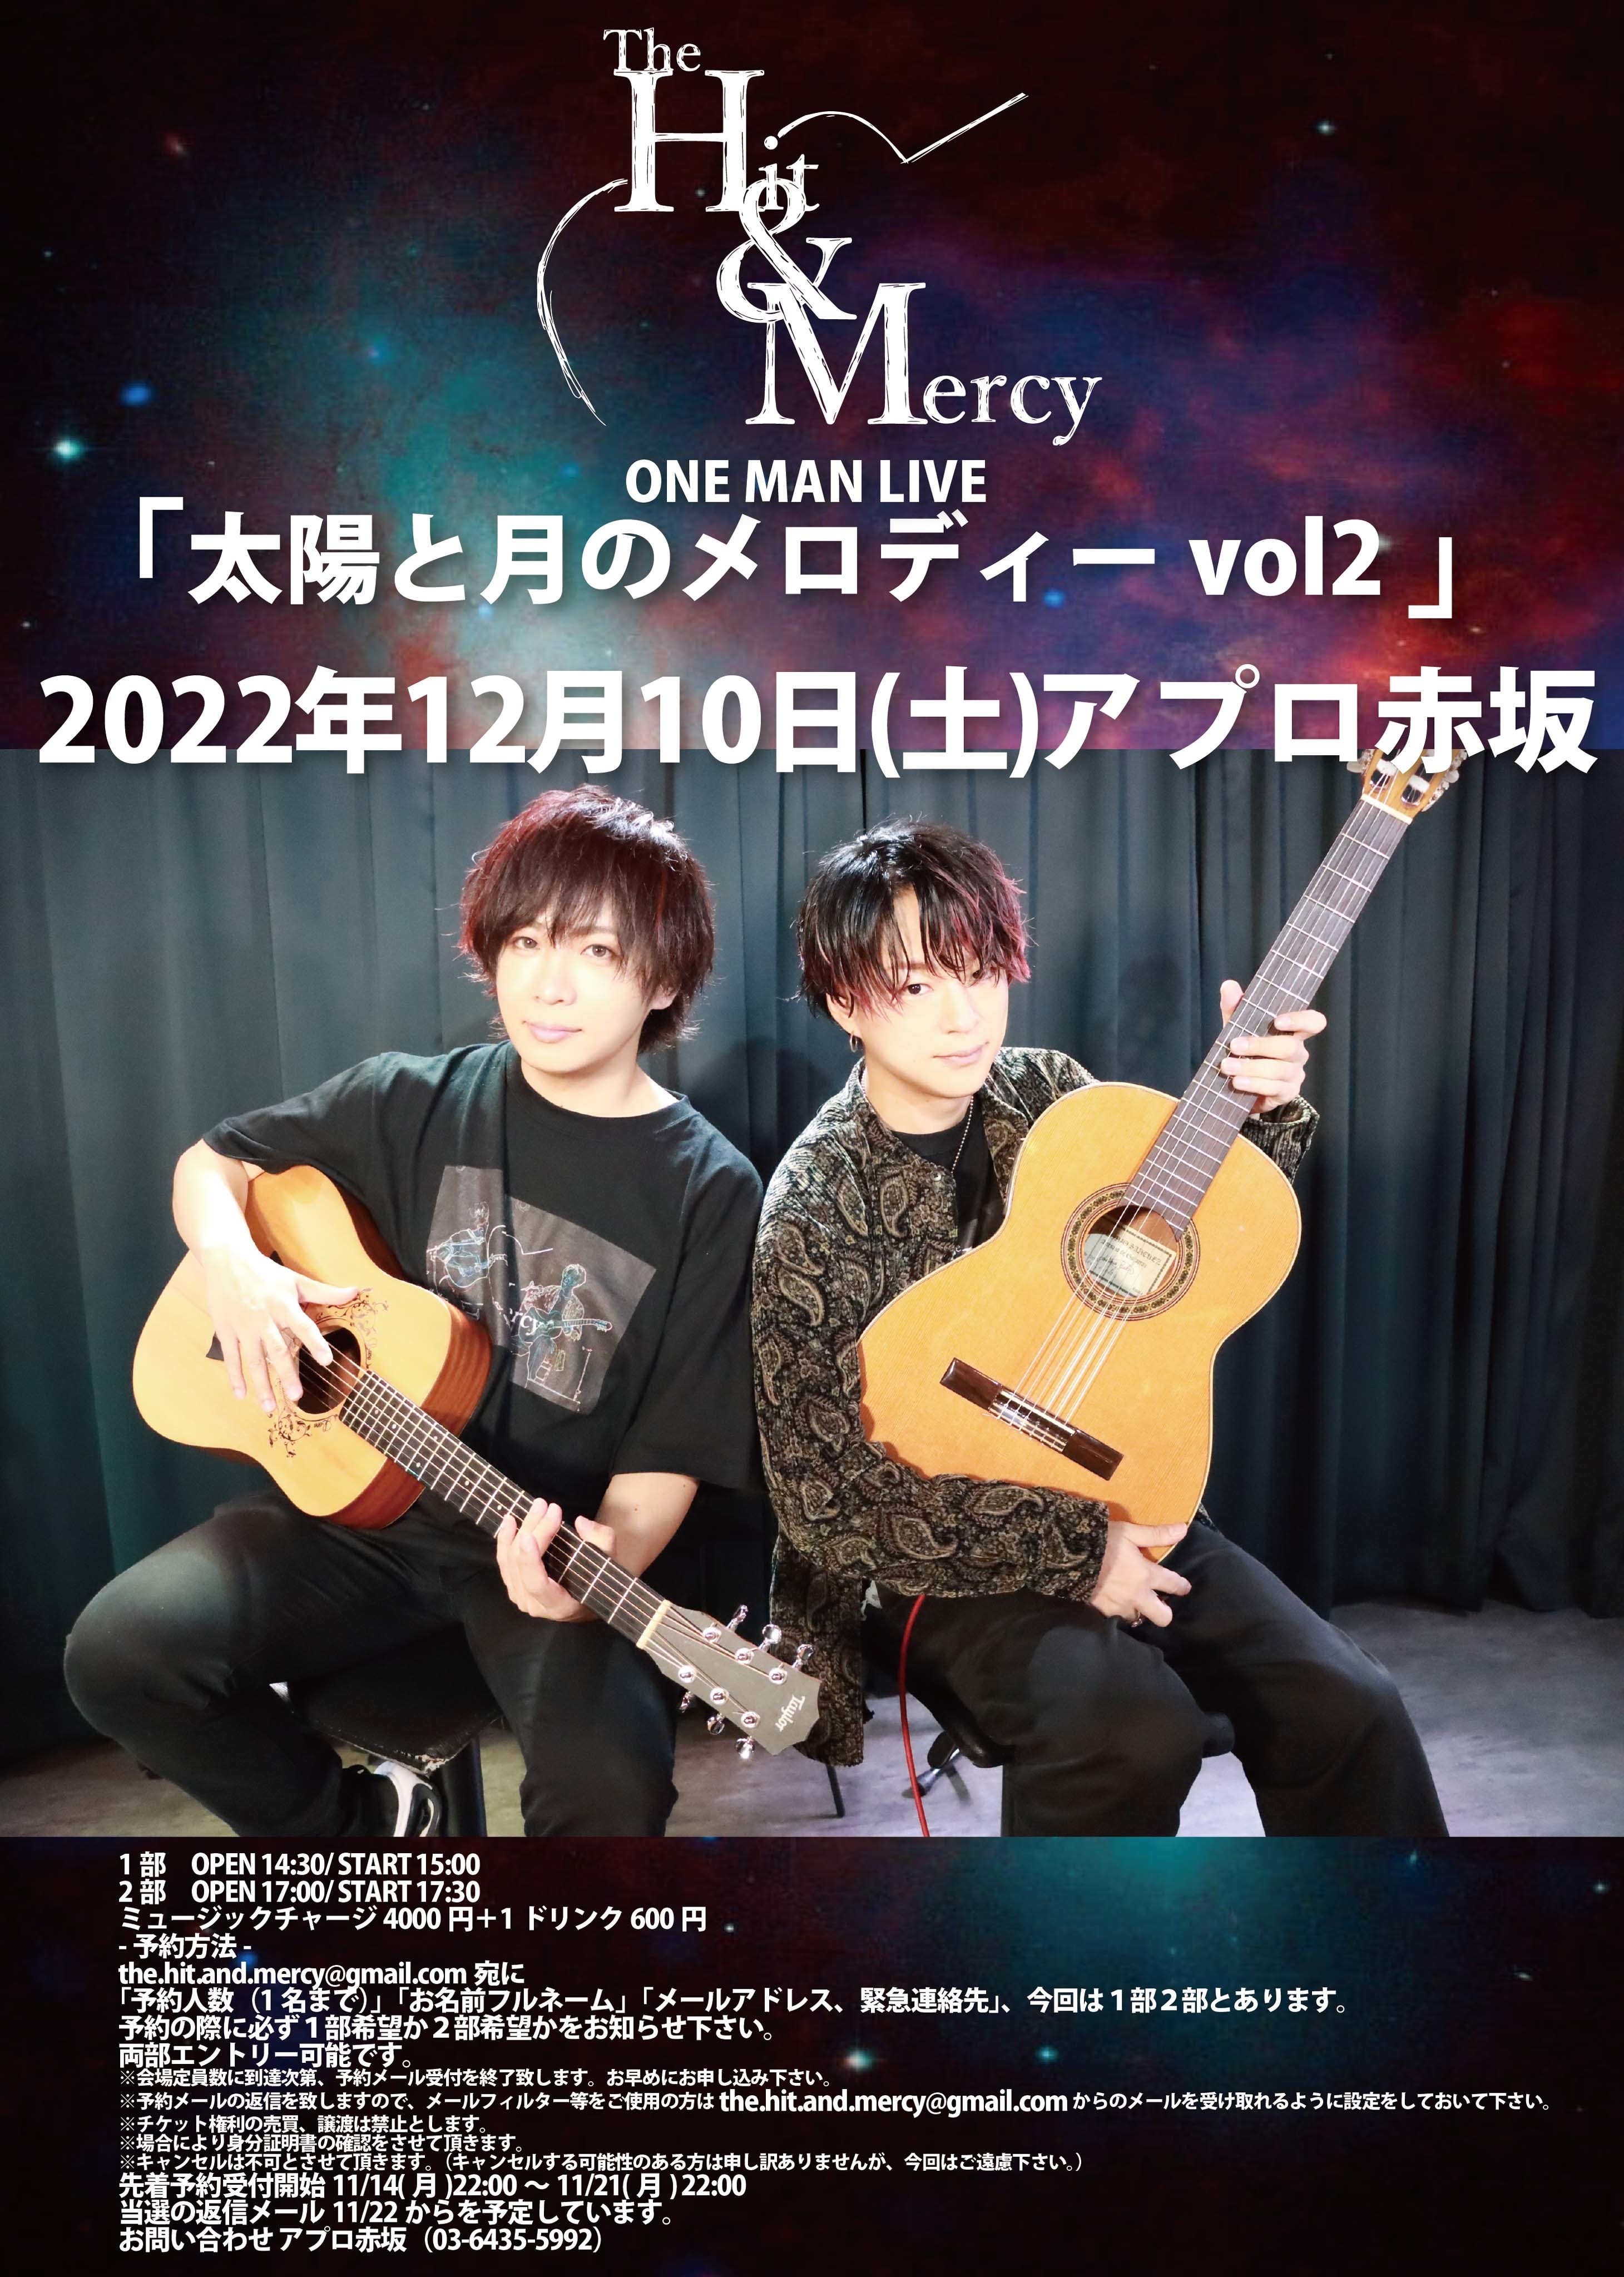 まゆ出演】The Hit&Mercy 2部制ONE MAN LIVE決定! | DaizyStripper